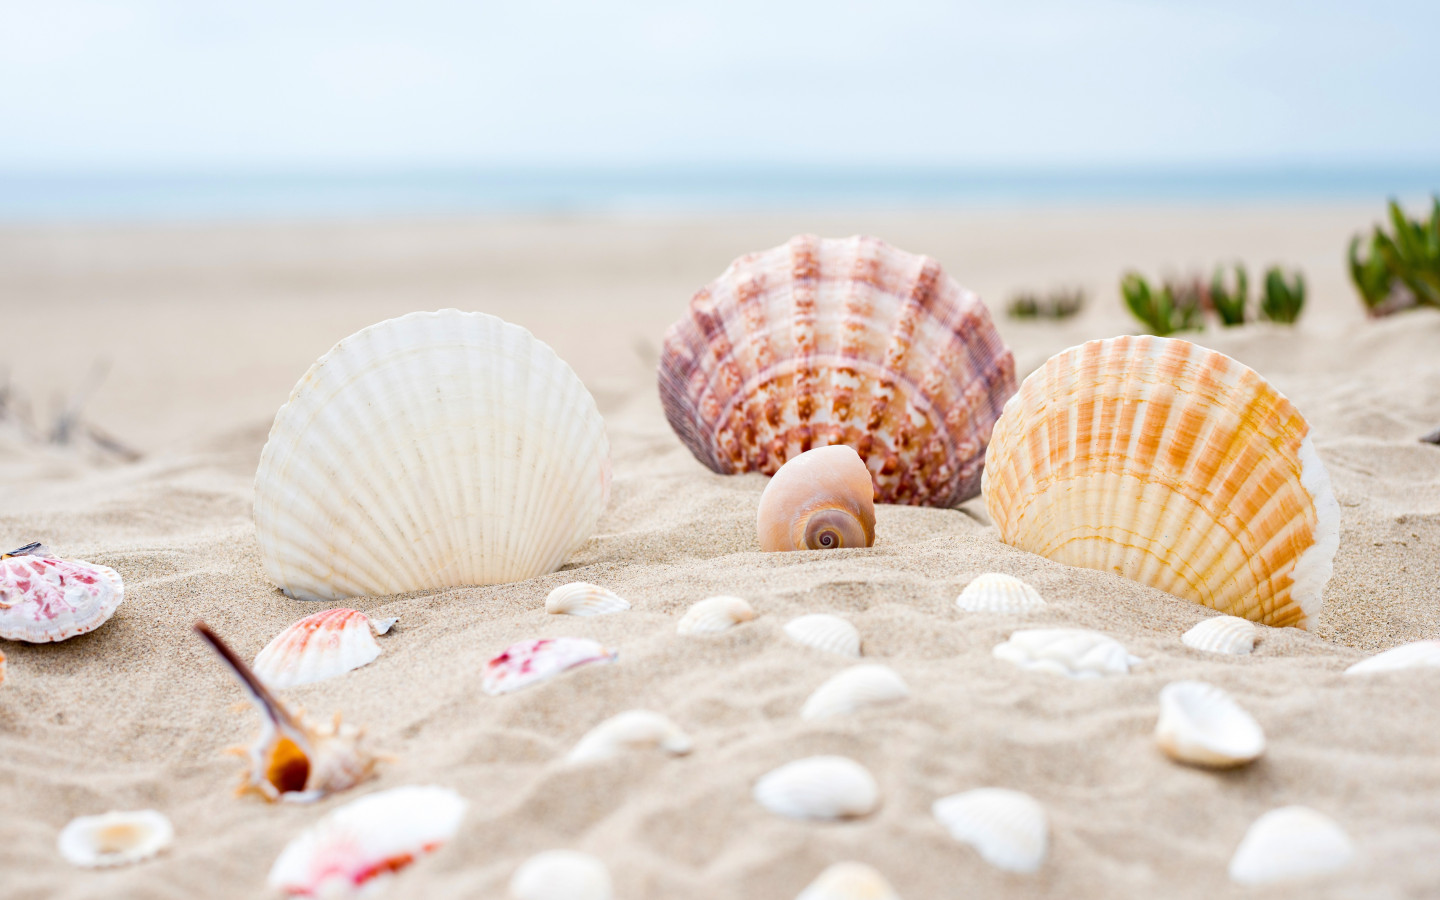 Shells on the ocean beach wallpaper 1440x900